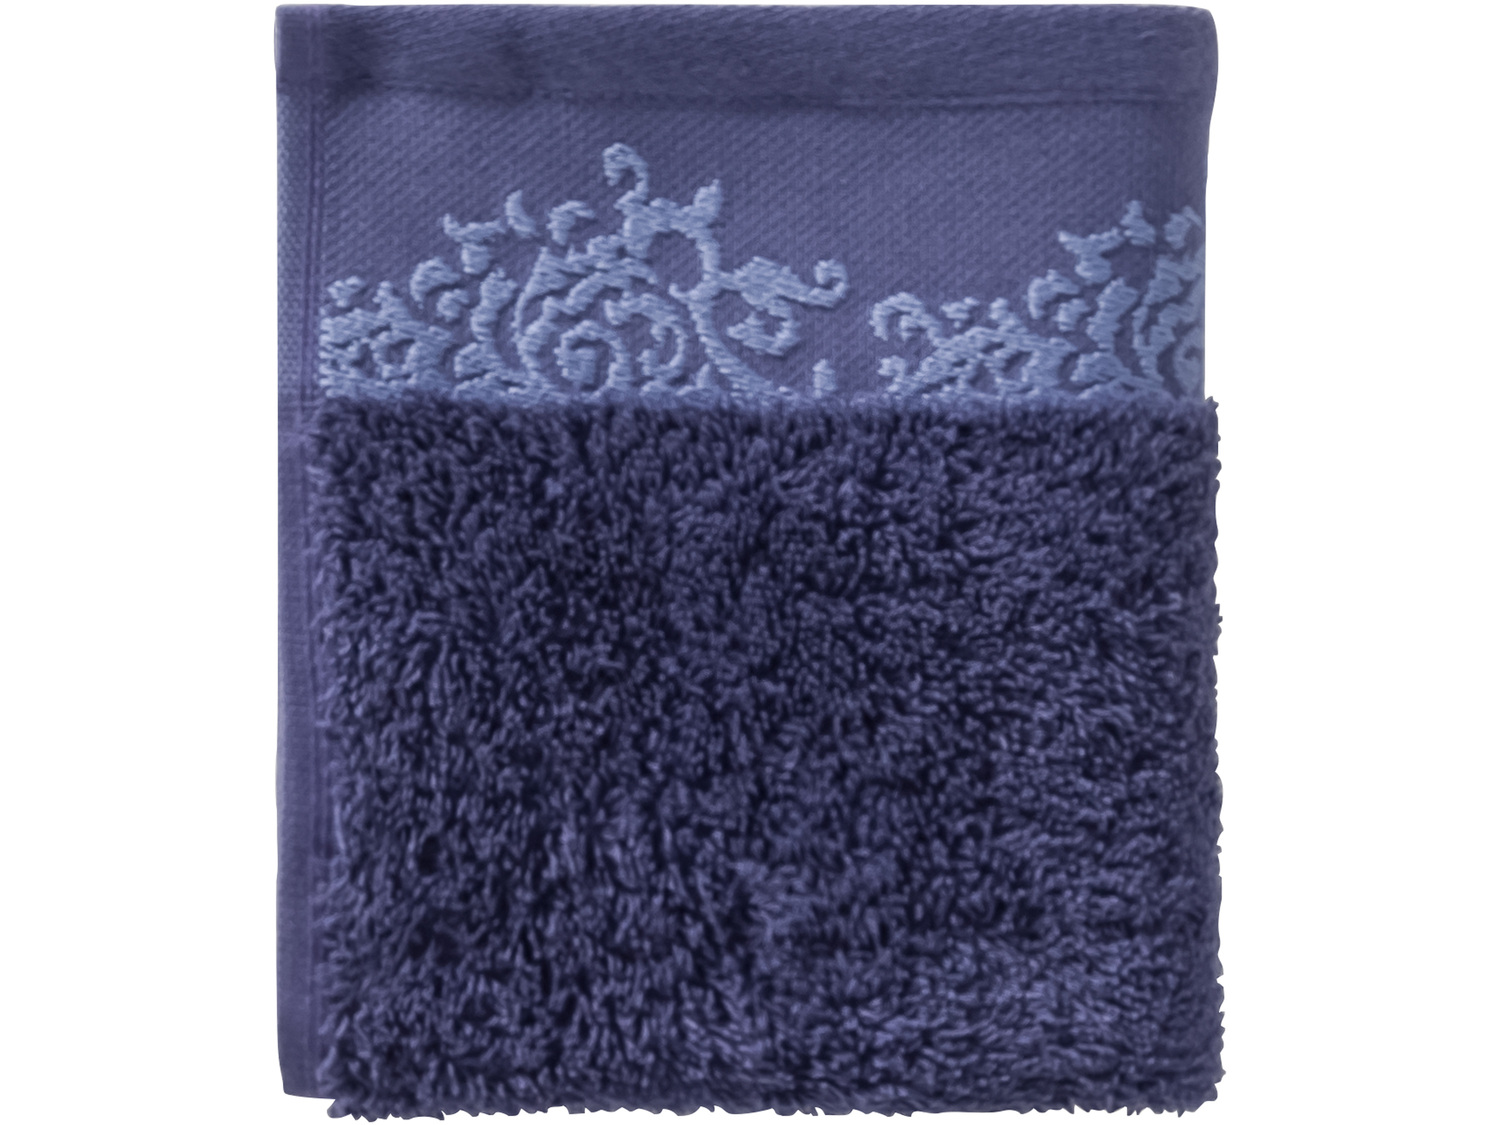 Ręcznik frotté 2 szt., 30 x 50 cm* Miomare, cena 4,99 PLN 
*Artykuł dostępny ...